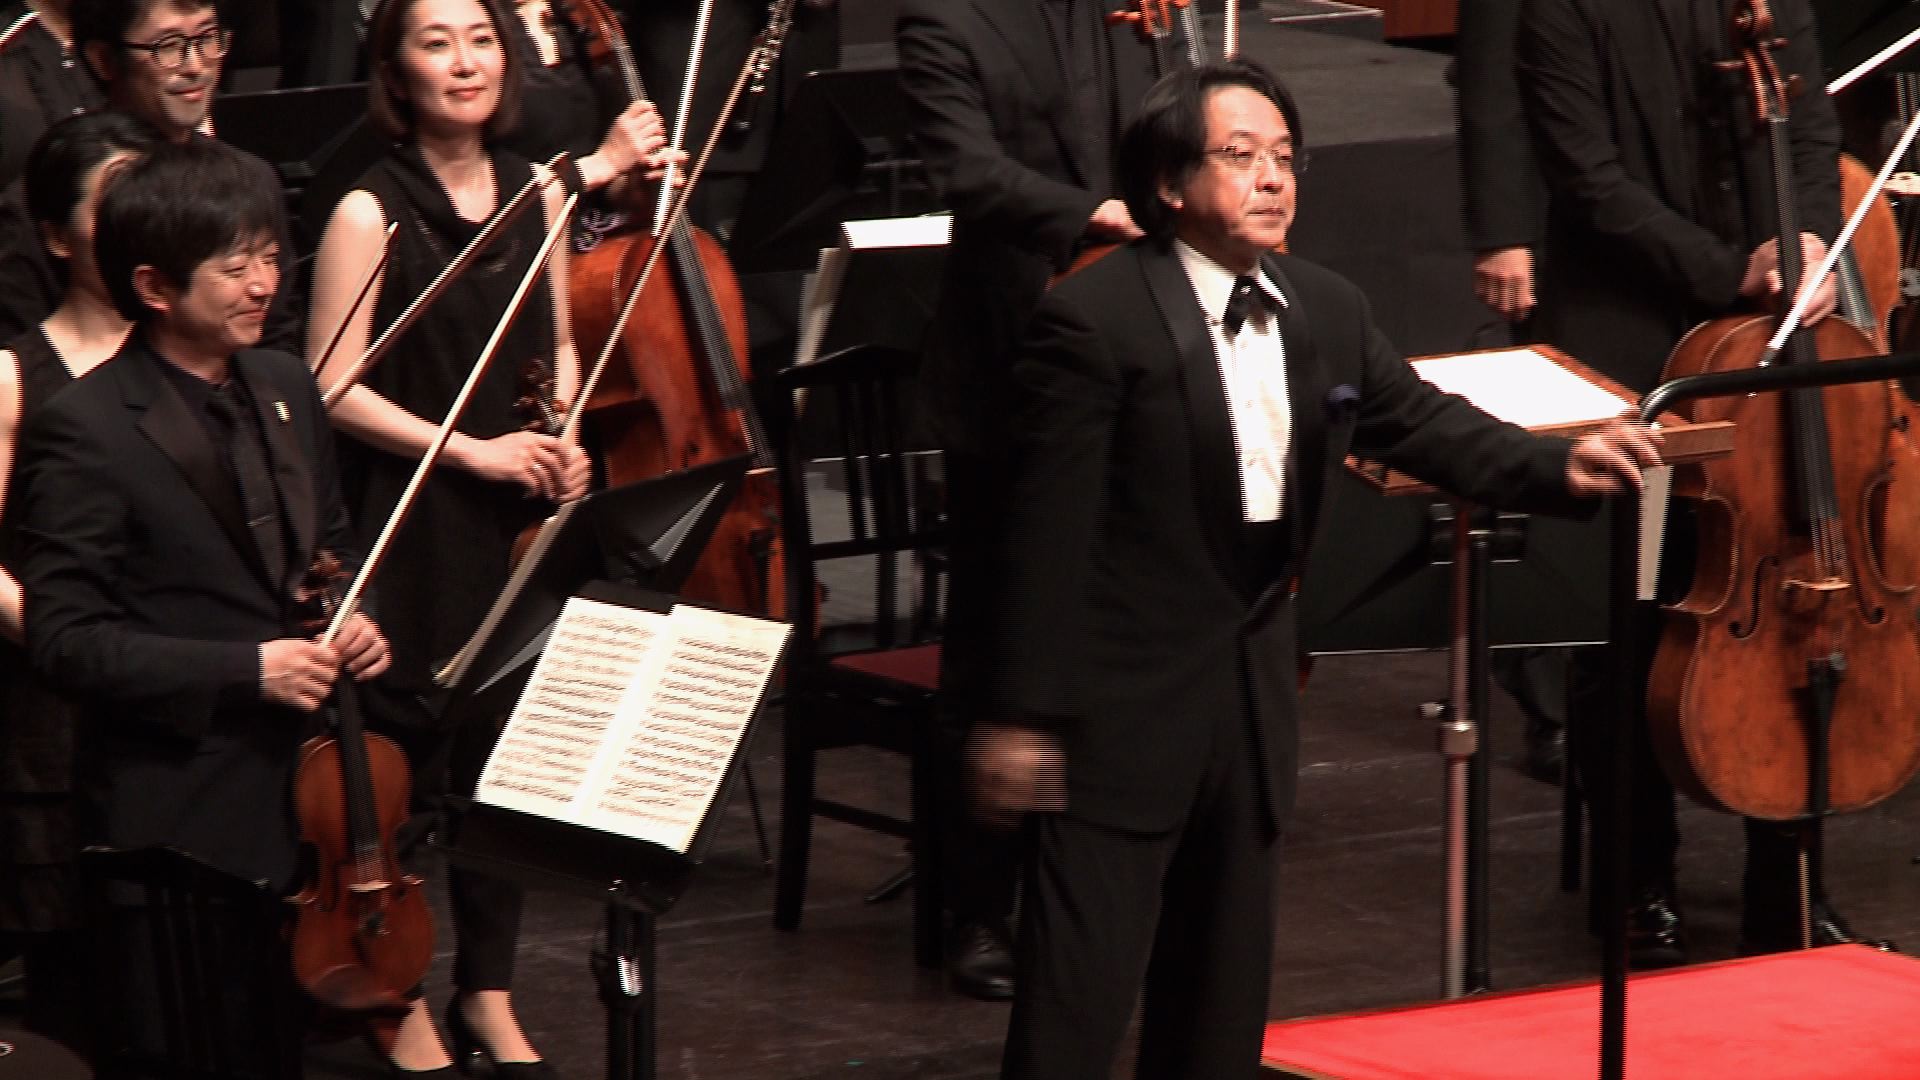 指揮：沼尻 竜典
近江シンフォニエッタ
F. メンデルスゾーン：フィンガルの洞窟
Ryusuke Numajiri, Conductor
Omi Sinfonietta
F. Mendelssohn: The Hebrides in D Major, Op. 26, MWV P7, 